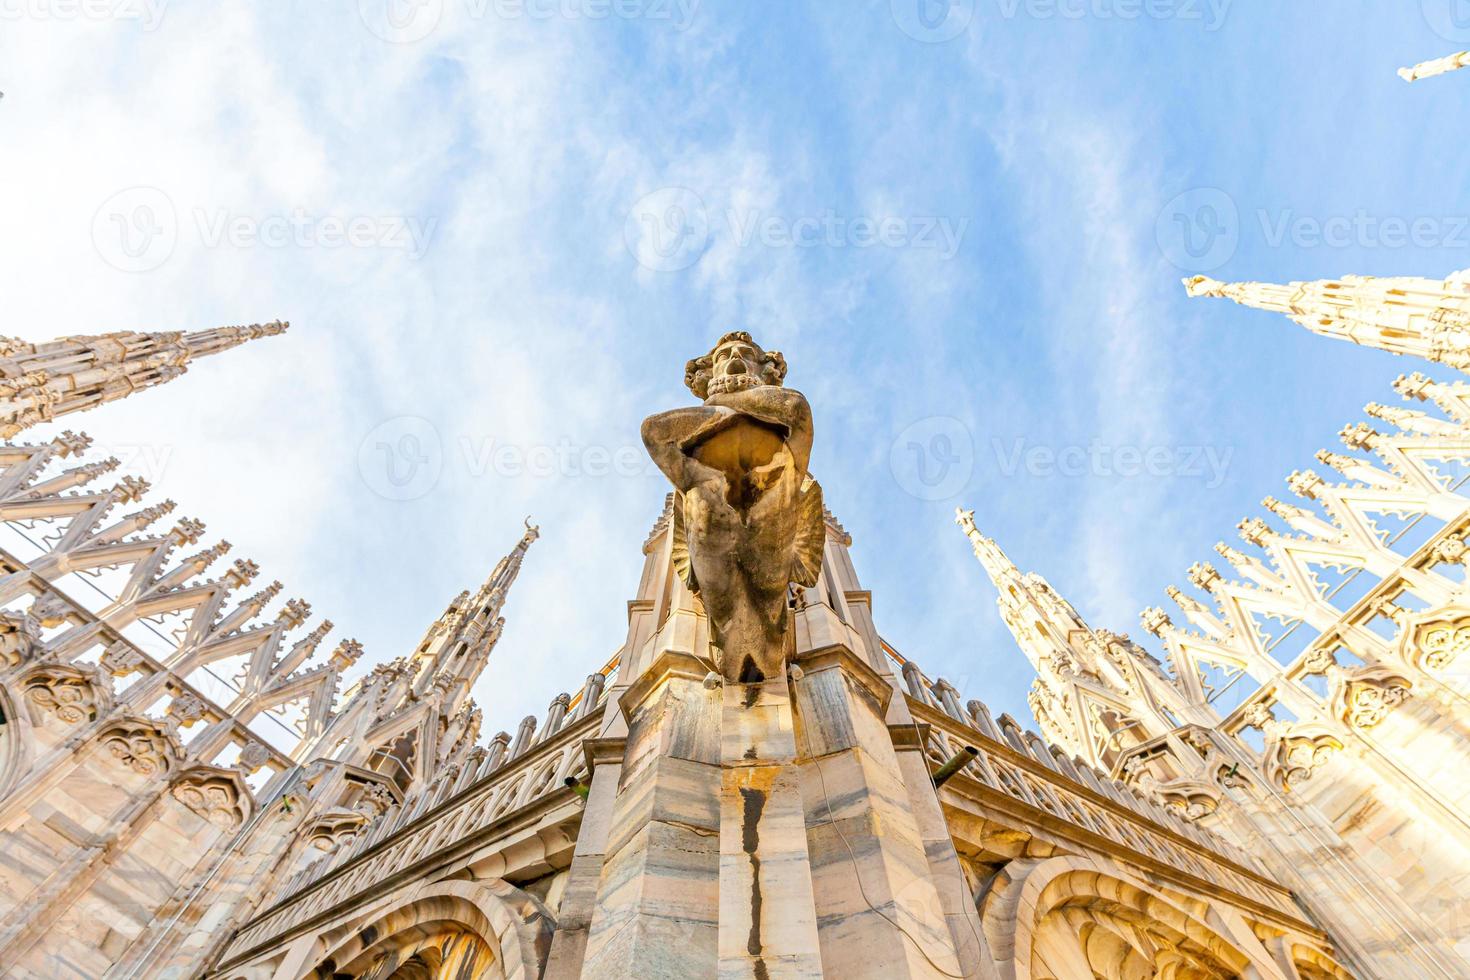 taket på katedralen i milano duomo di milano med gotiska spiror och statyer i vit marmor. topp turistattraktion på piazza i Milano, Lombardiet, Italien. vidvinkelvy av gammal gotisk arkitektur och konst. foto